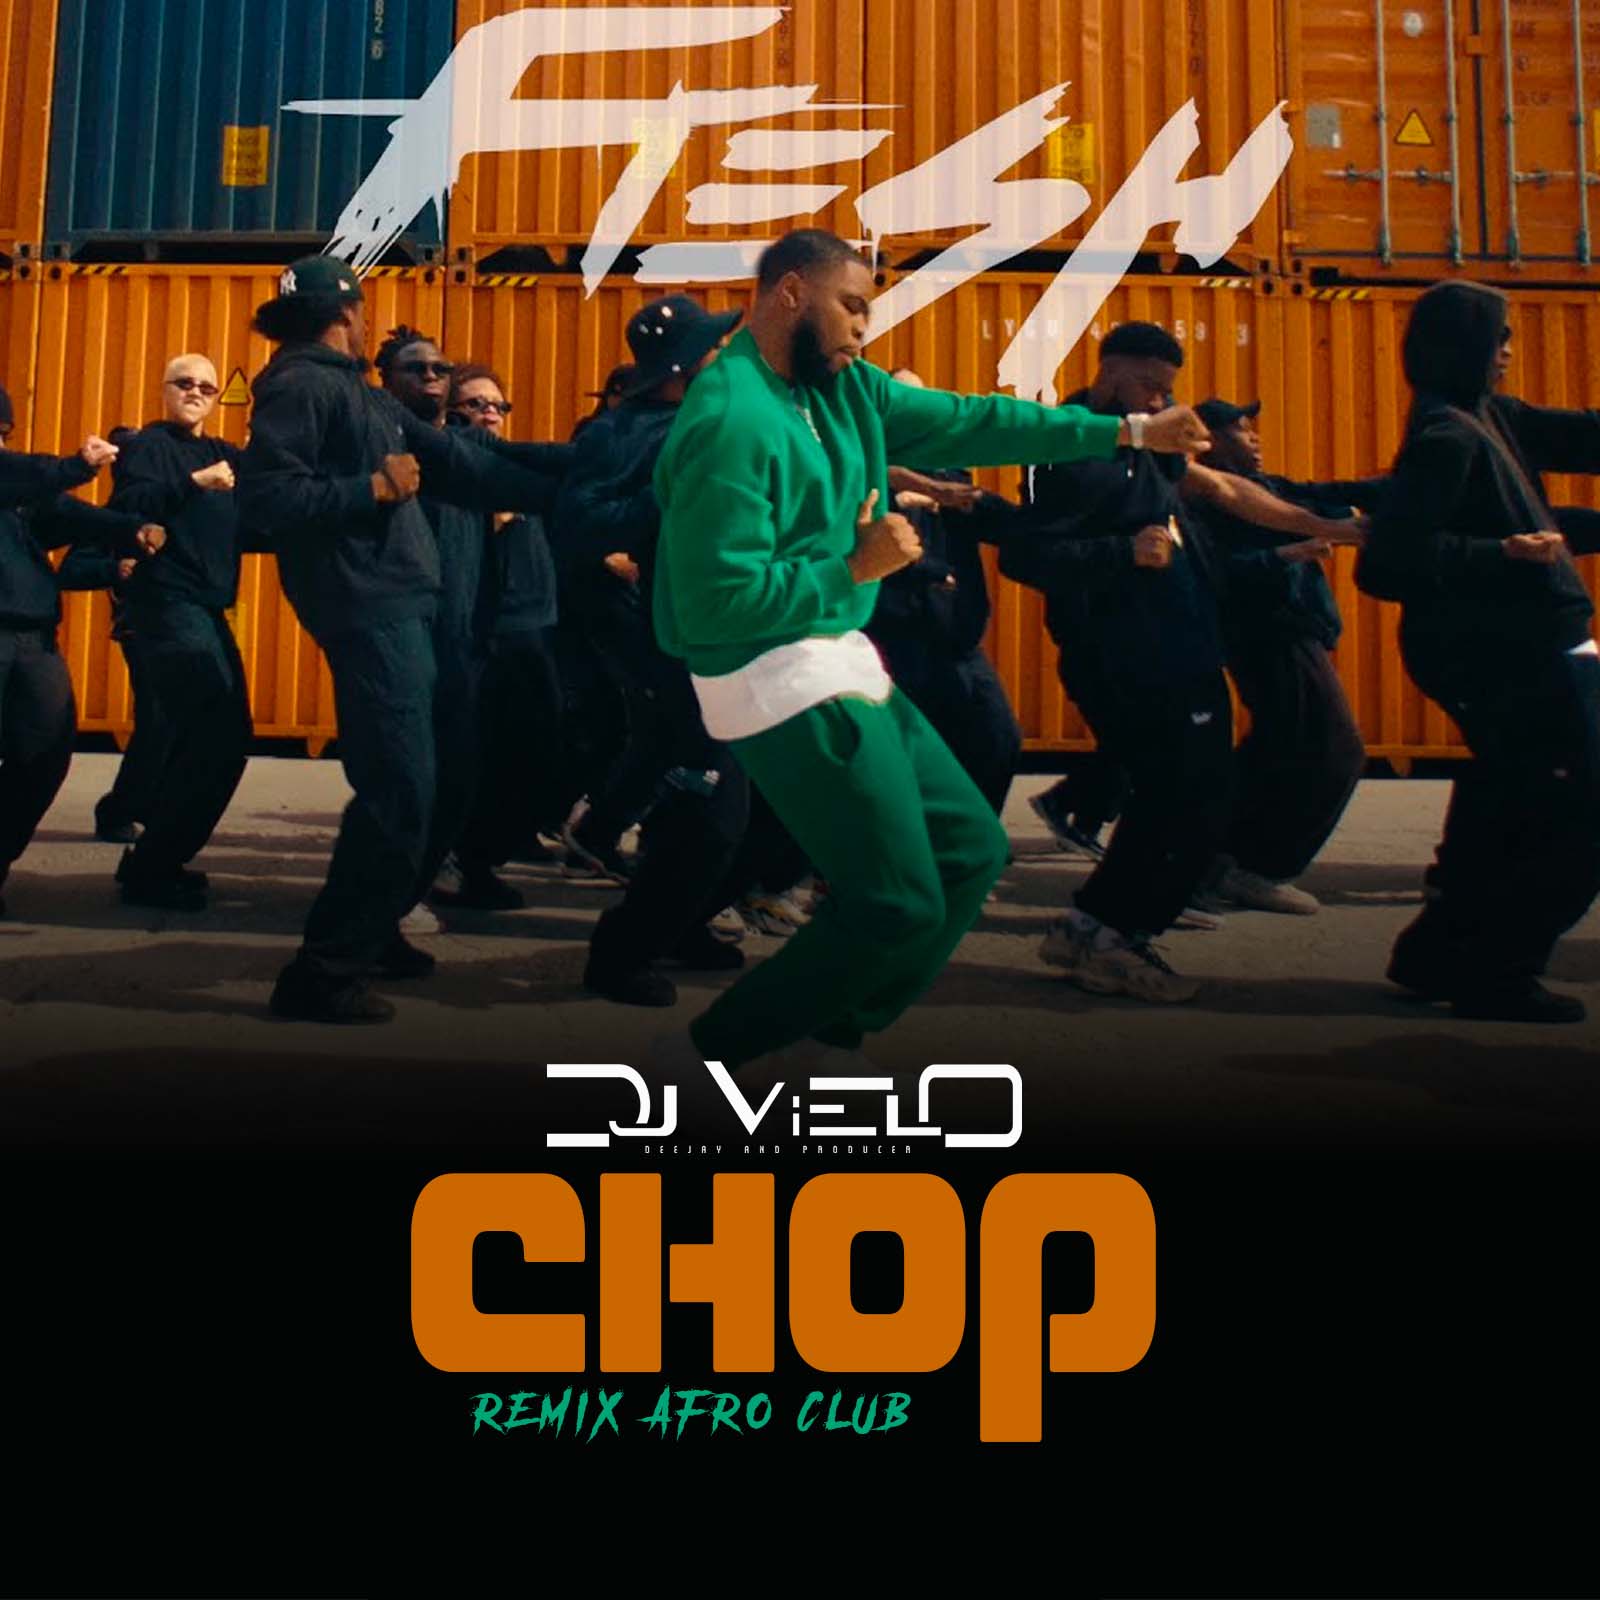 Tikiake Dj Vielo X Fresh - Chop Remix Afro Club DISPO SUR SPOTIFY, DEEZER, APPLE MUSIC